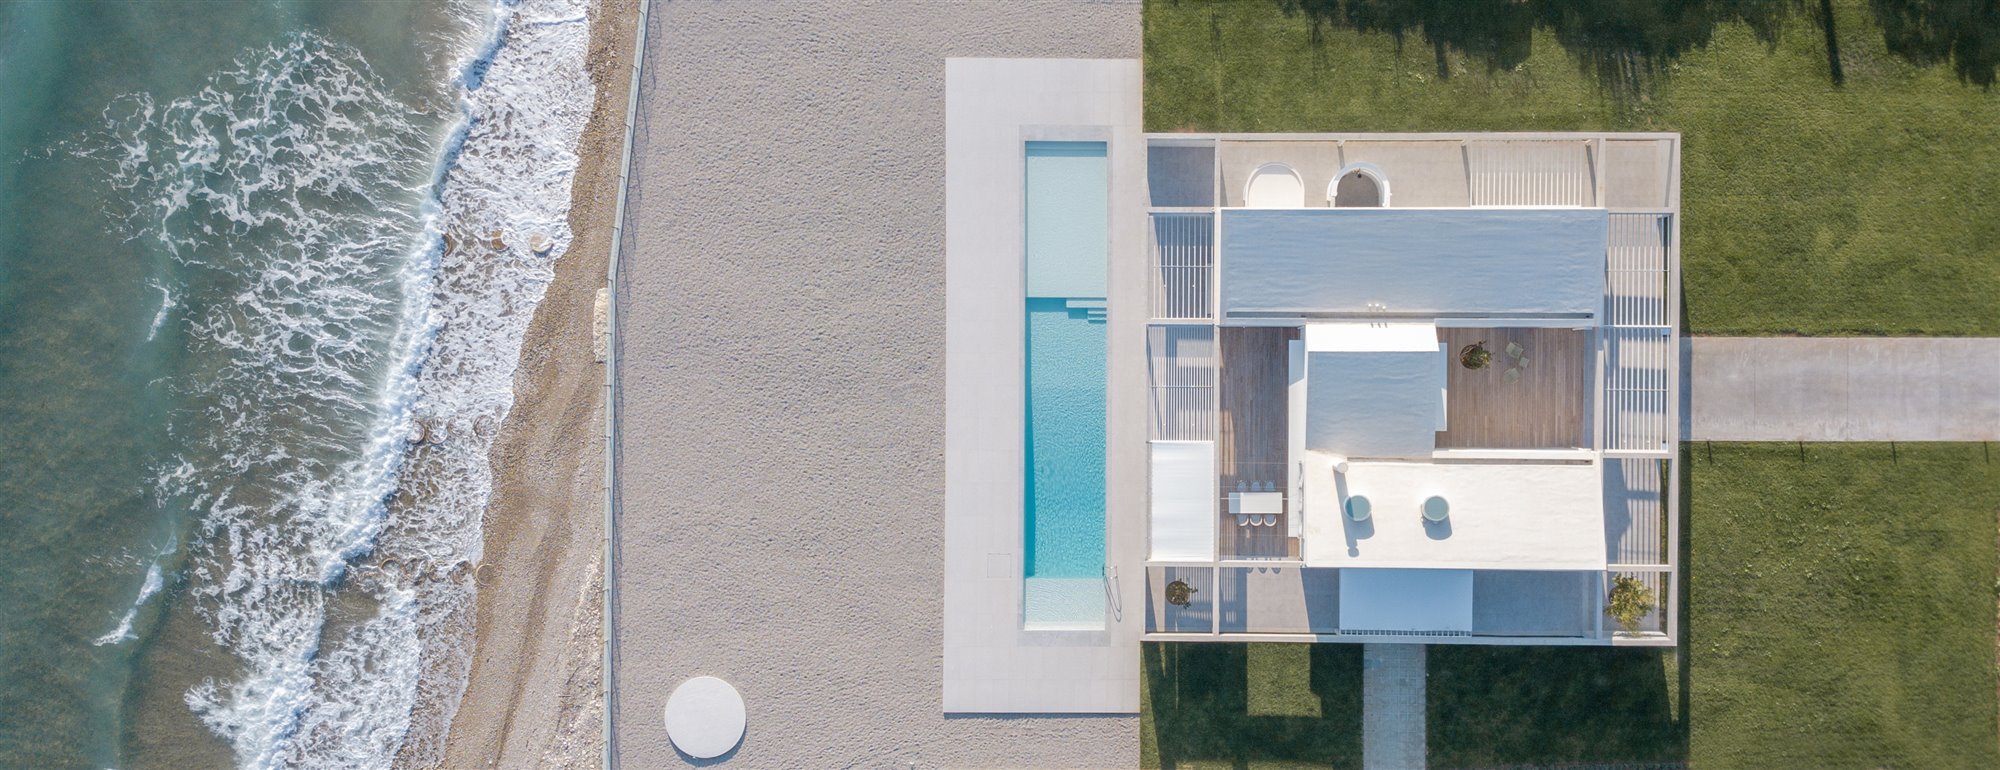 Vista aerea dron de una casa con piscina a pie de playa